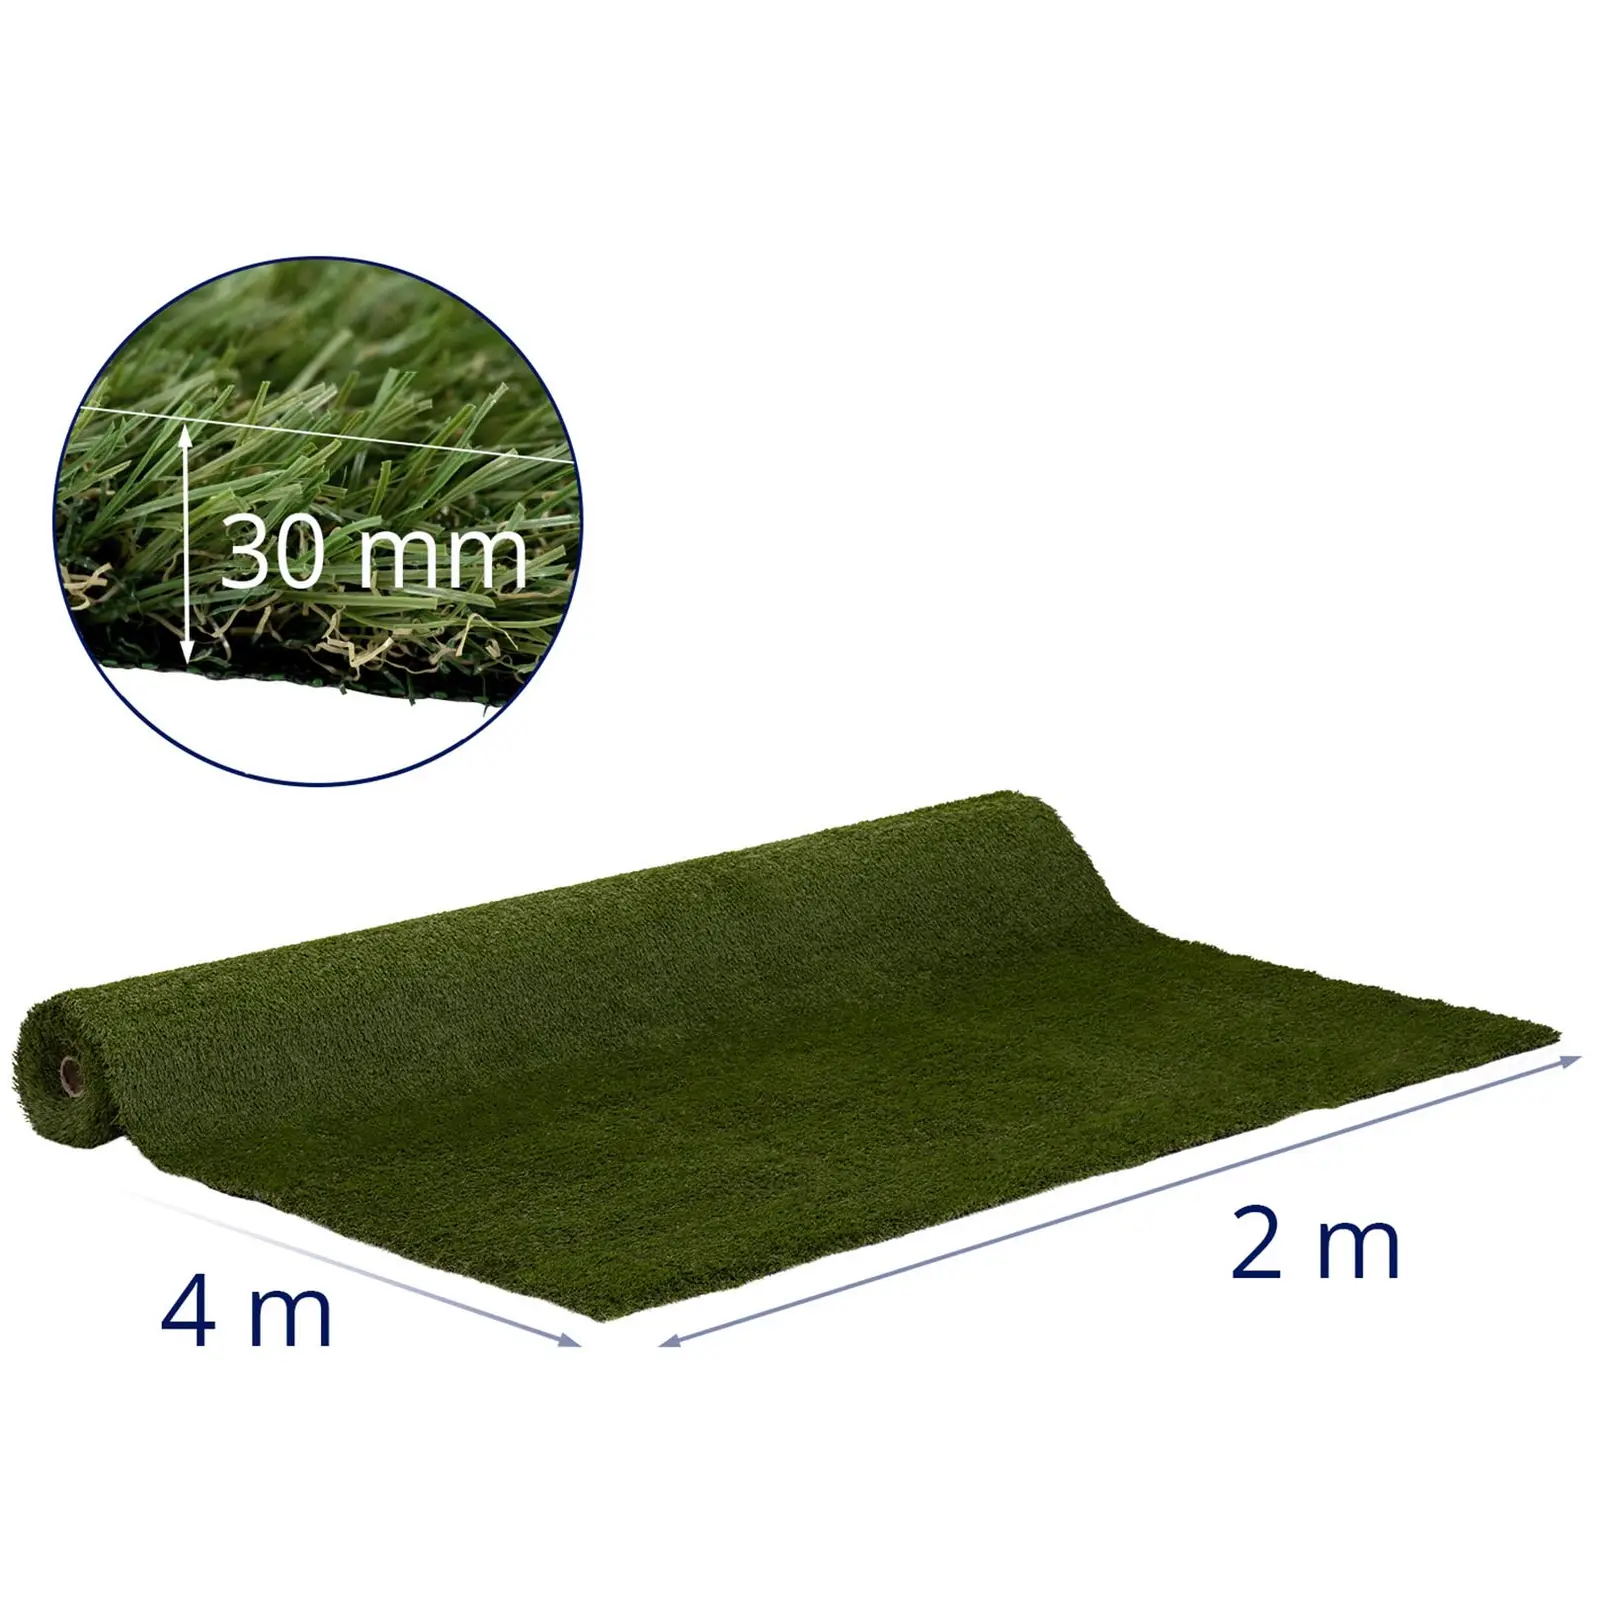 Umělý trávník - 403 x 200 cm - výška: 30 mm - hustota stehů: 20/10 cm - odolný proti UV záření